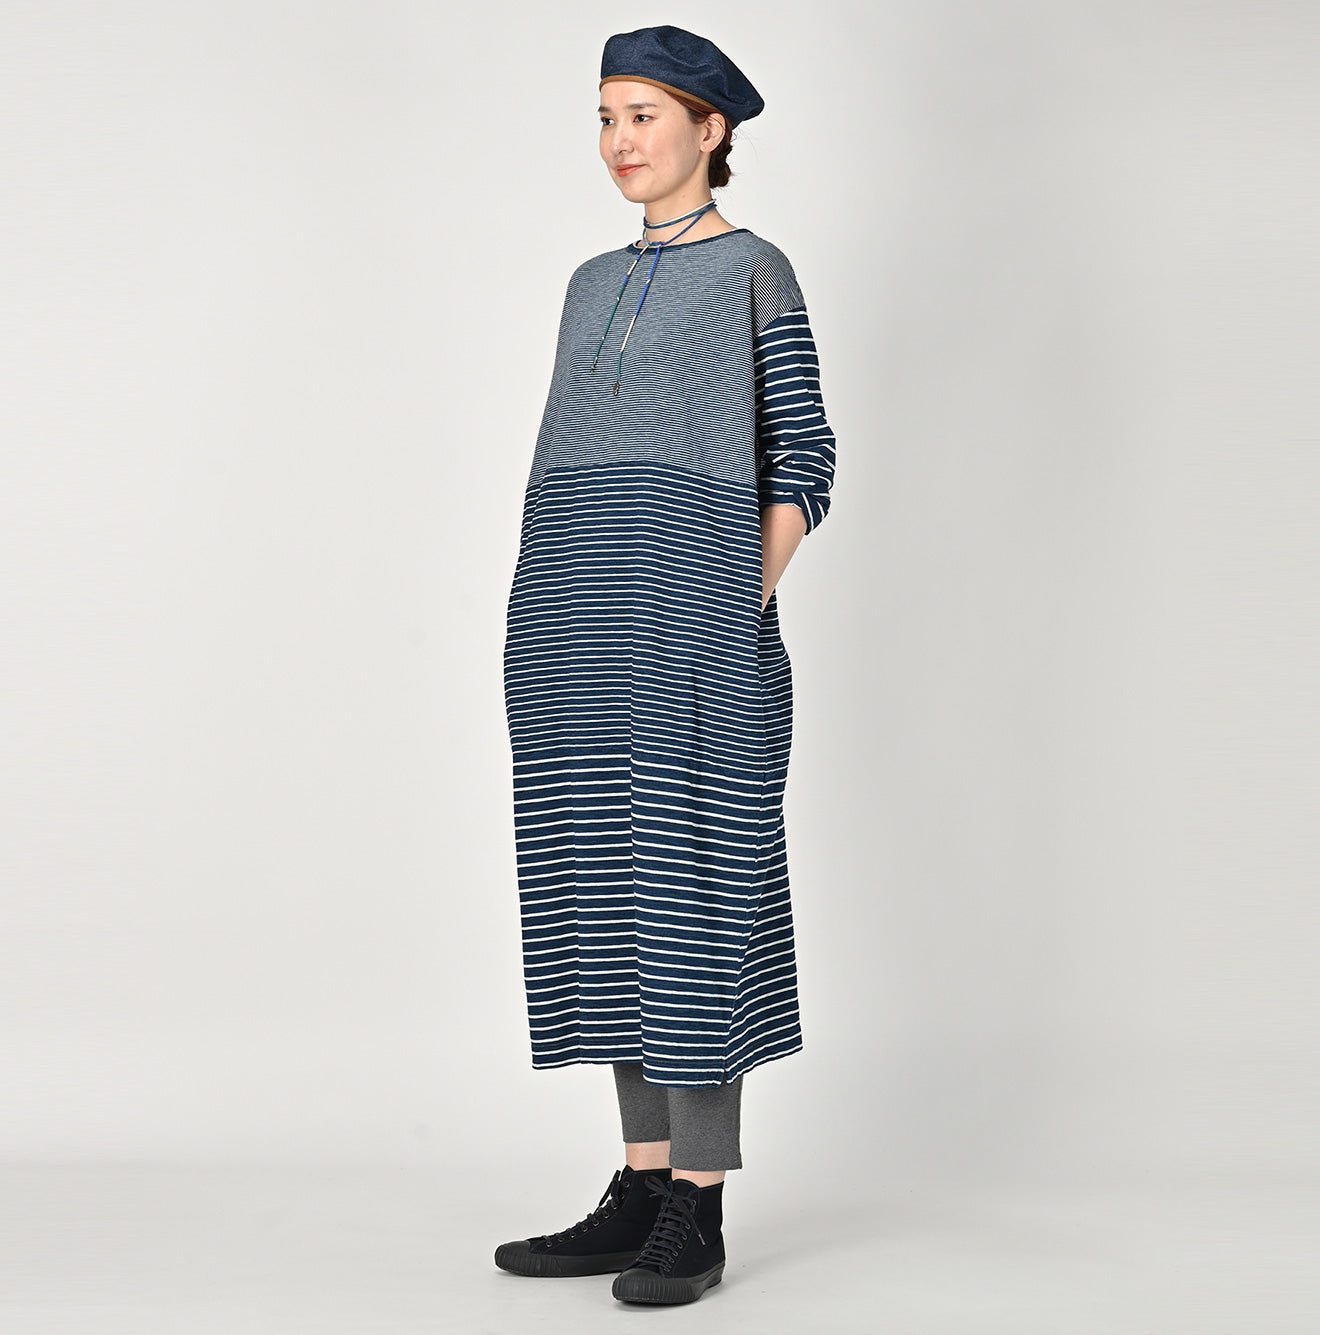 Indigo Stripe Tenjiku Dress (size 4)